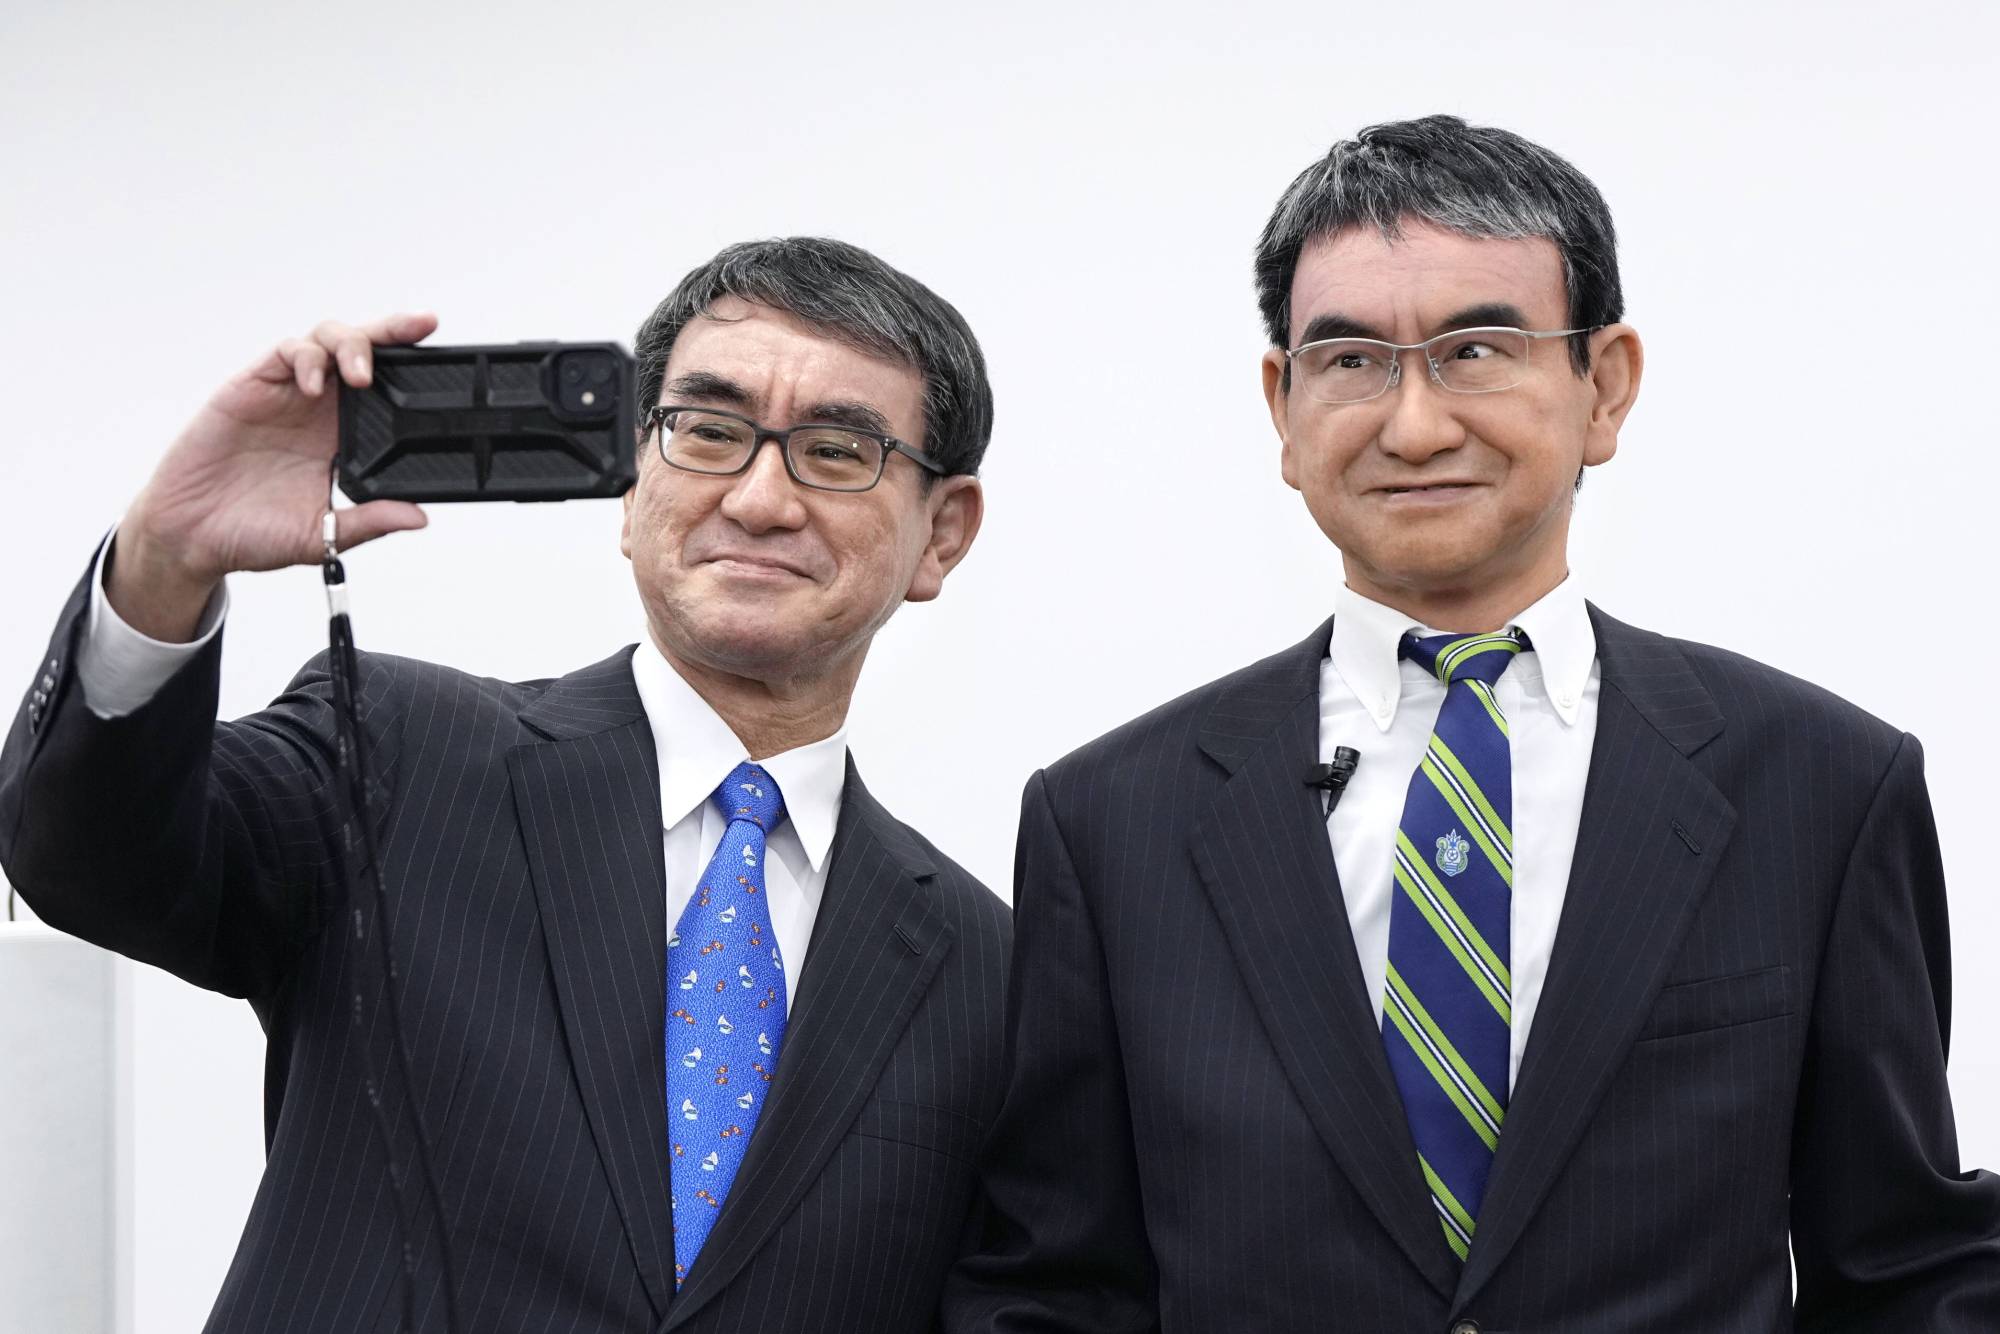 Il Giappone ha creato un clone digitale di un ministro che è più intelligente e più evoluto di una persona reale